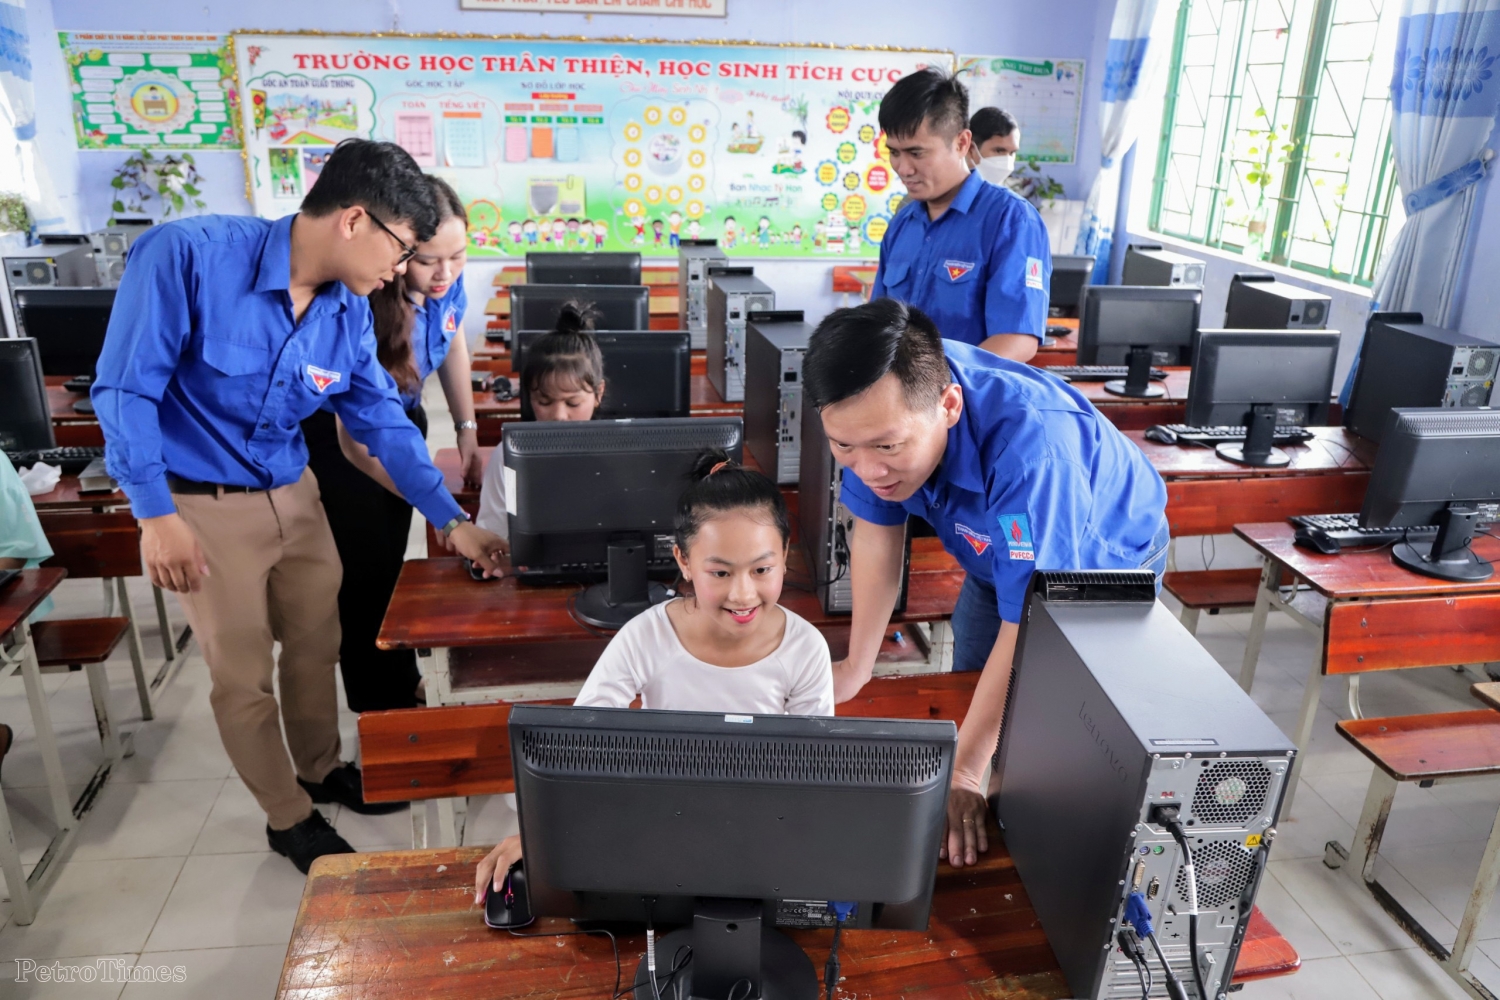 Đoàn Cơ sở Cơ quan PVFCCo tổ chức chương trình an sinh xã hội ý nghĩa tại Ninh Thuận